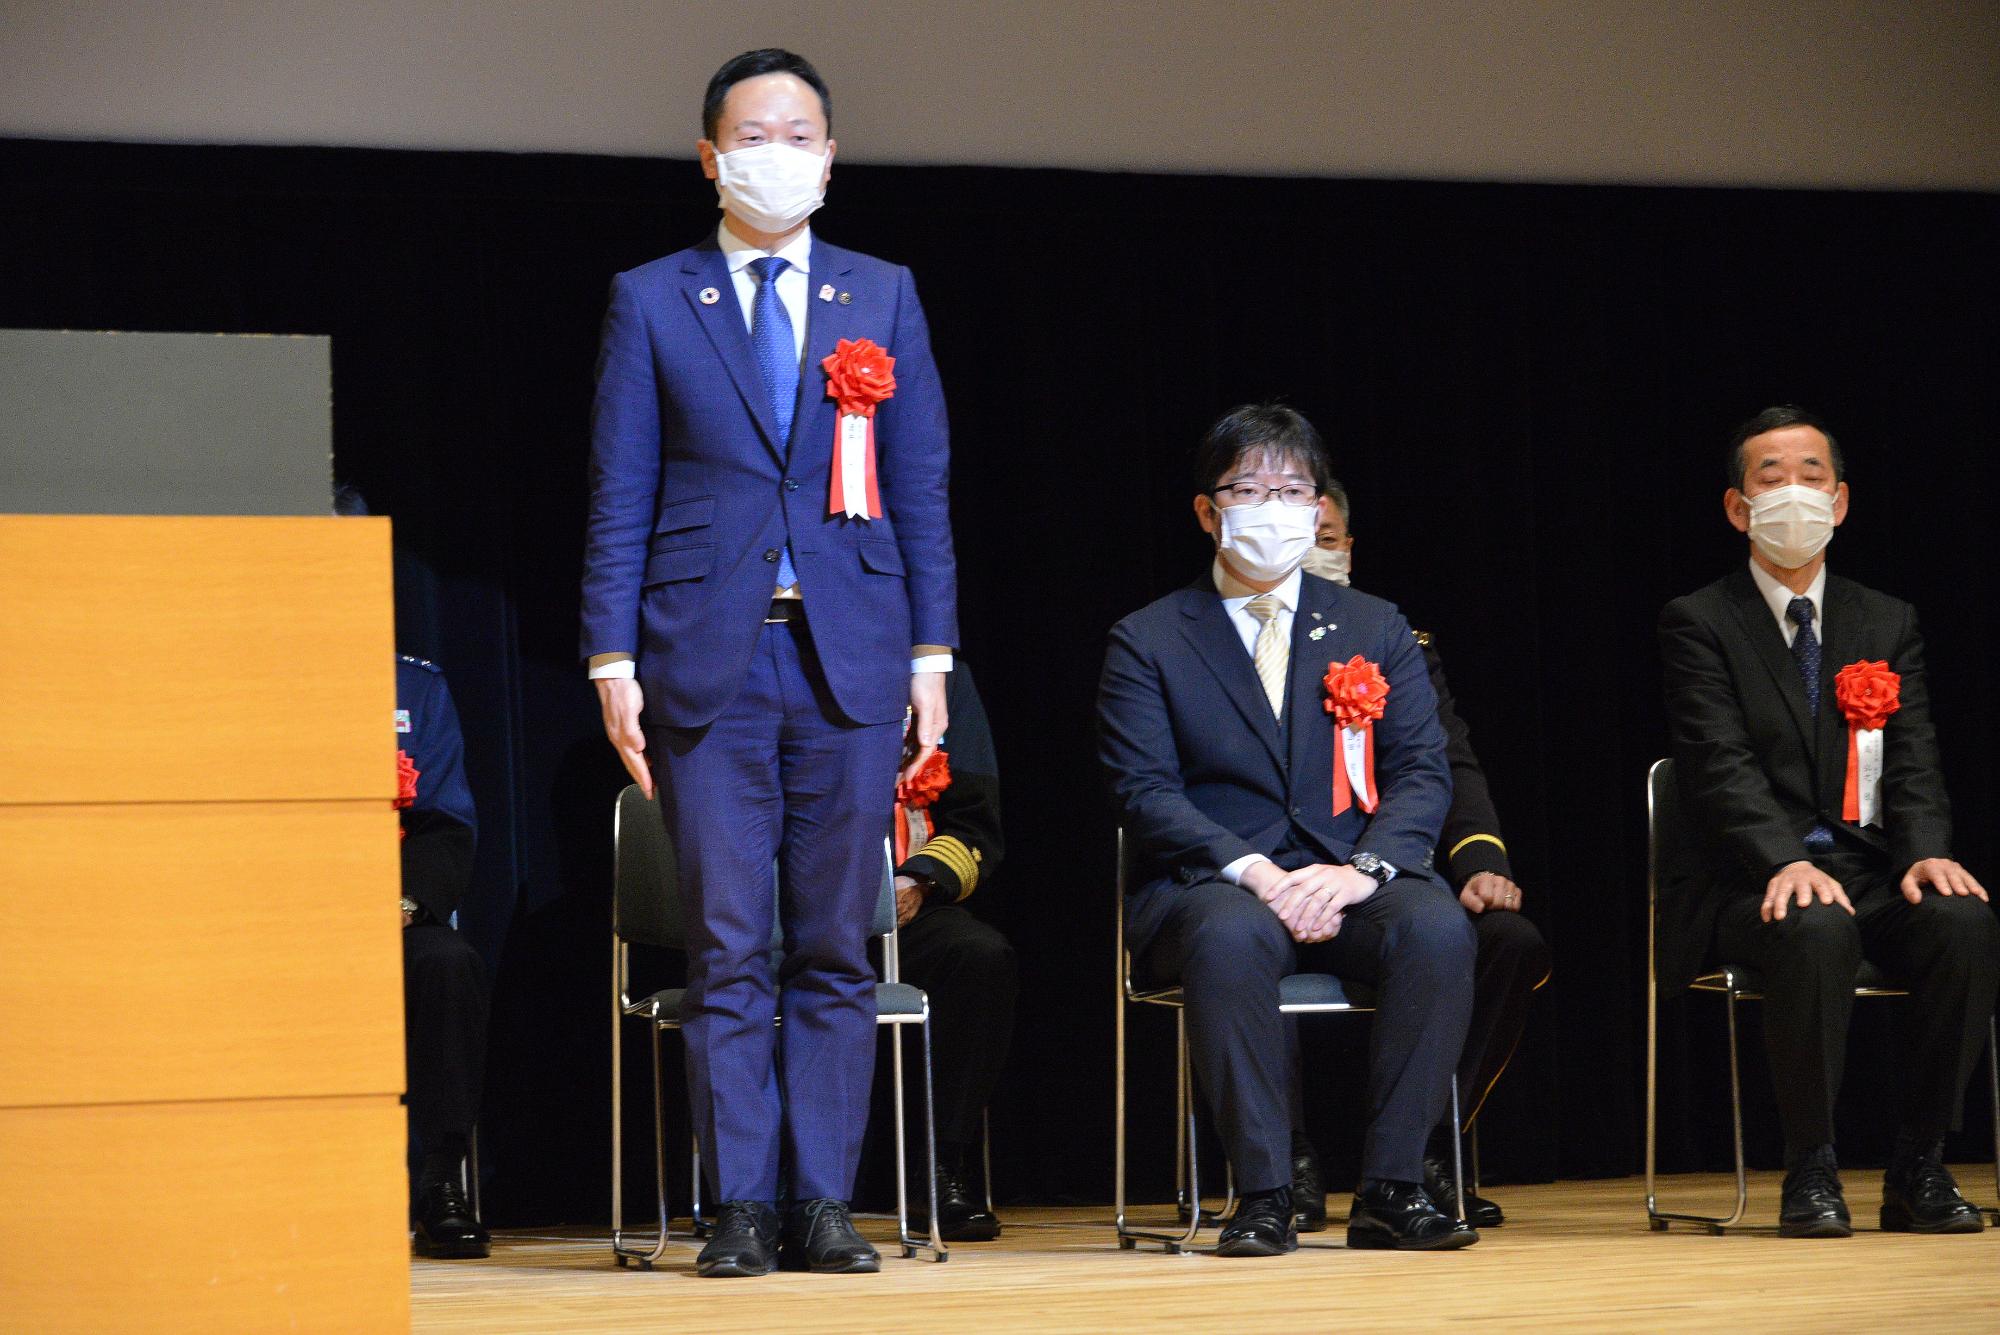 大阪自衛隊入隊入校式で登壇する酒井市長